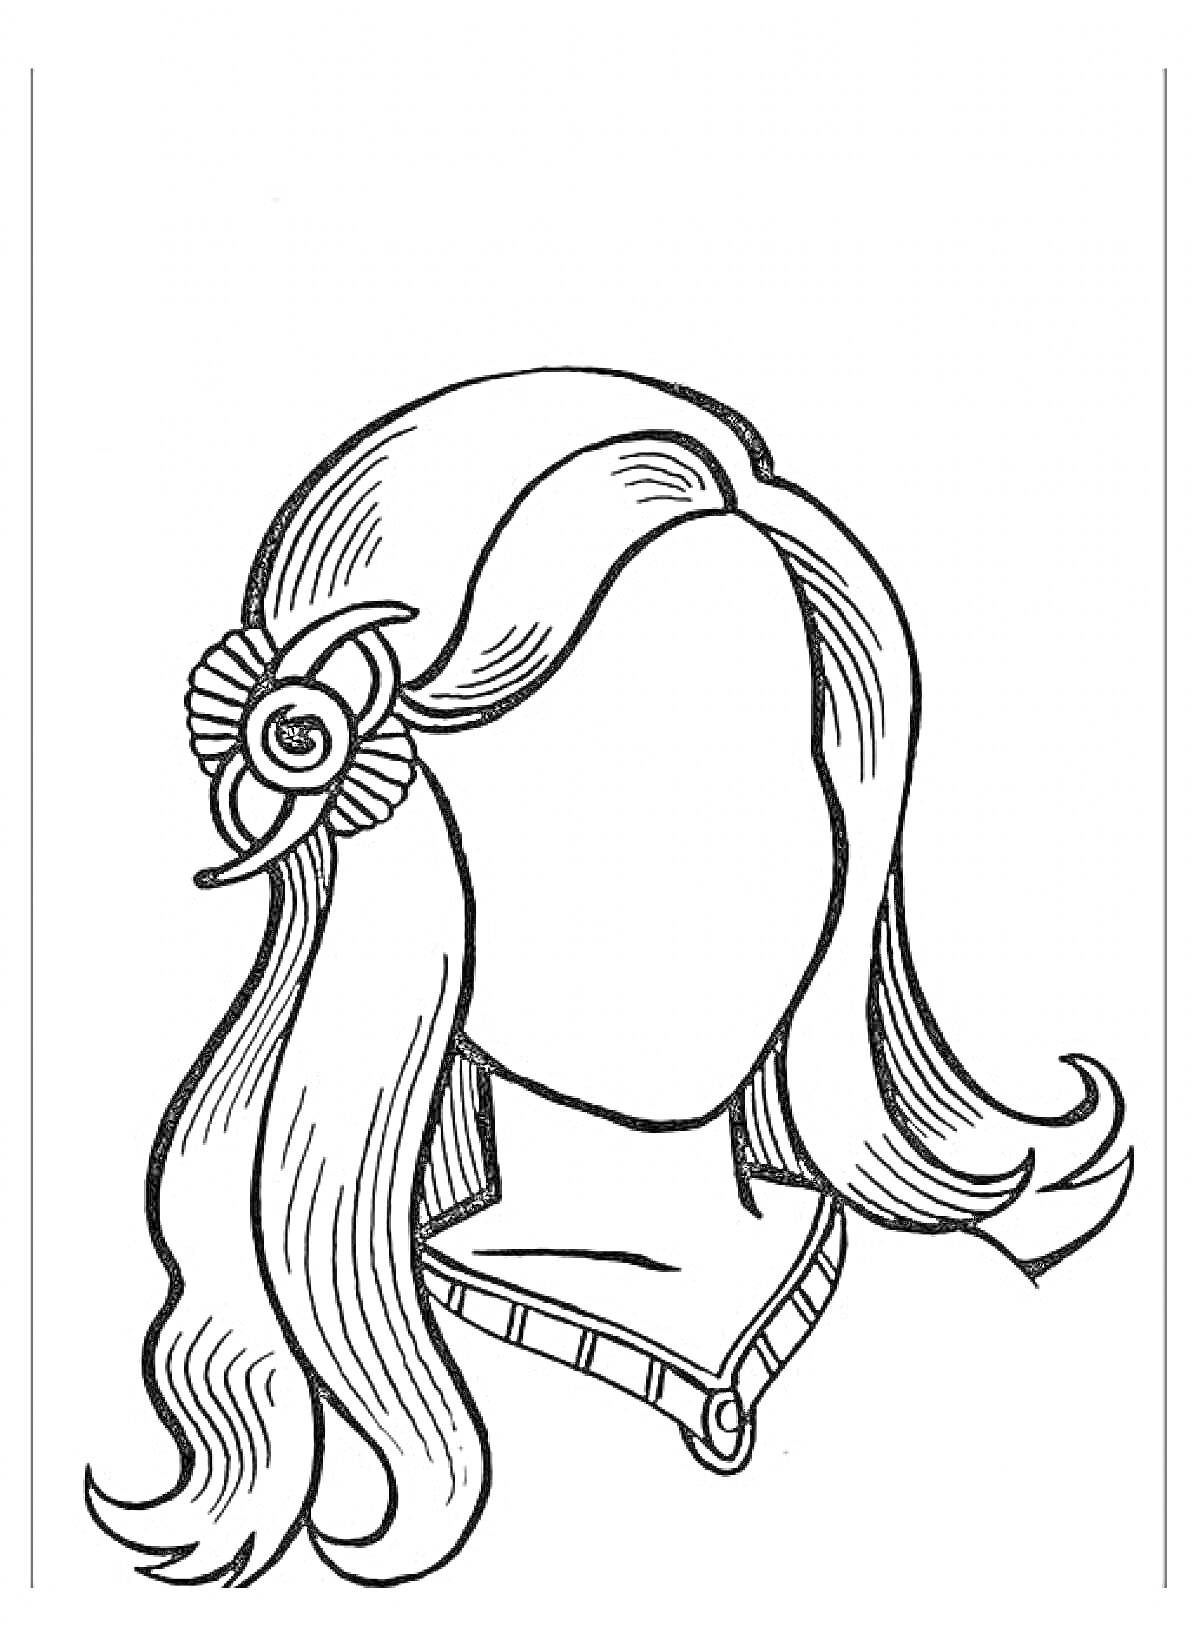 Раскраска Портрет мамы с волнистыми волосами и цветком в волосах